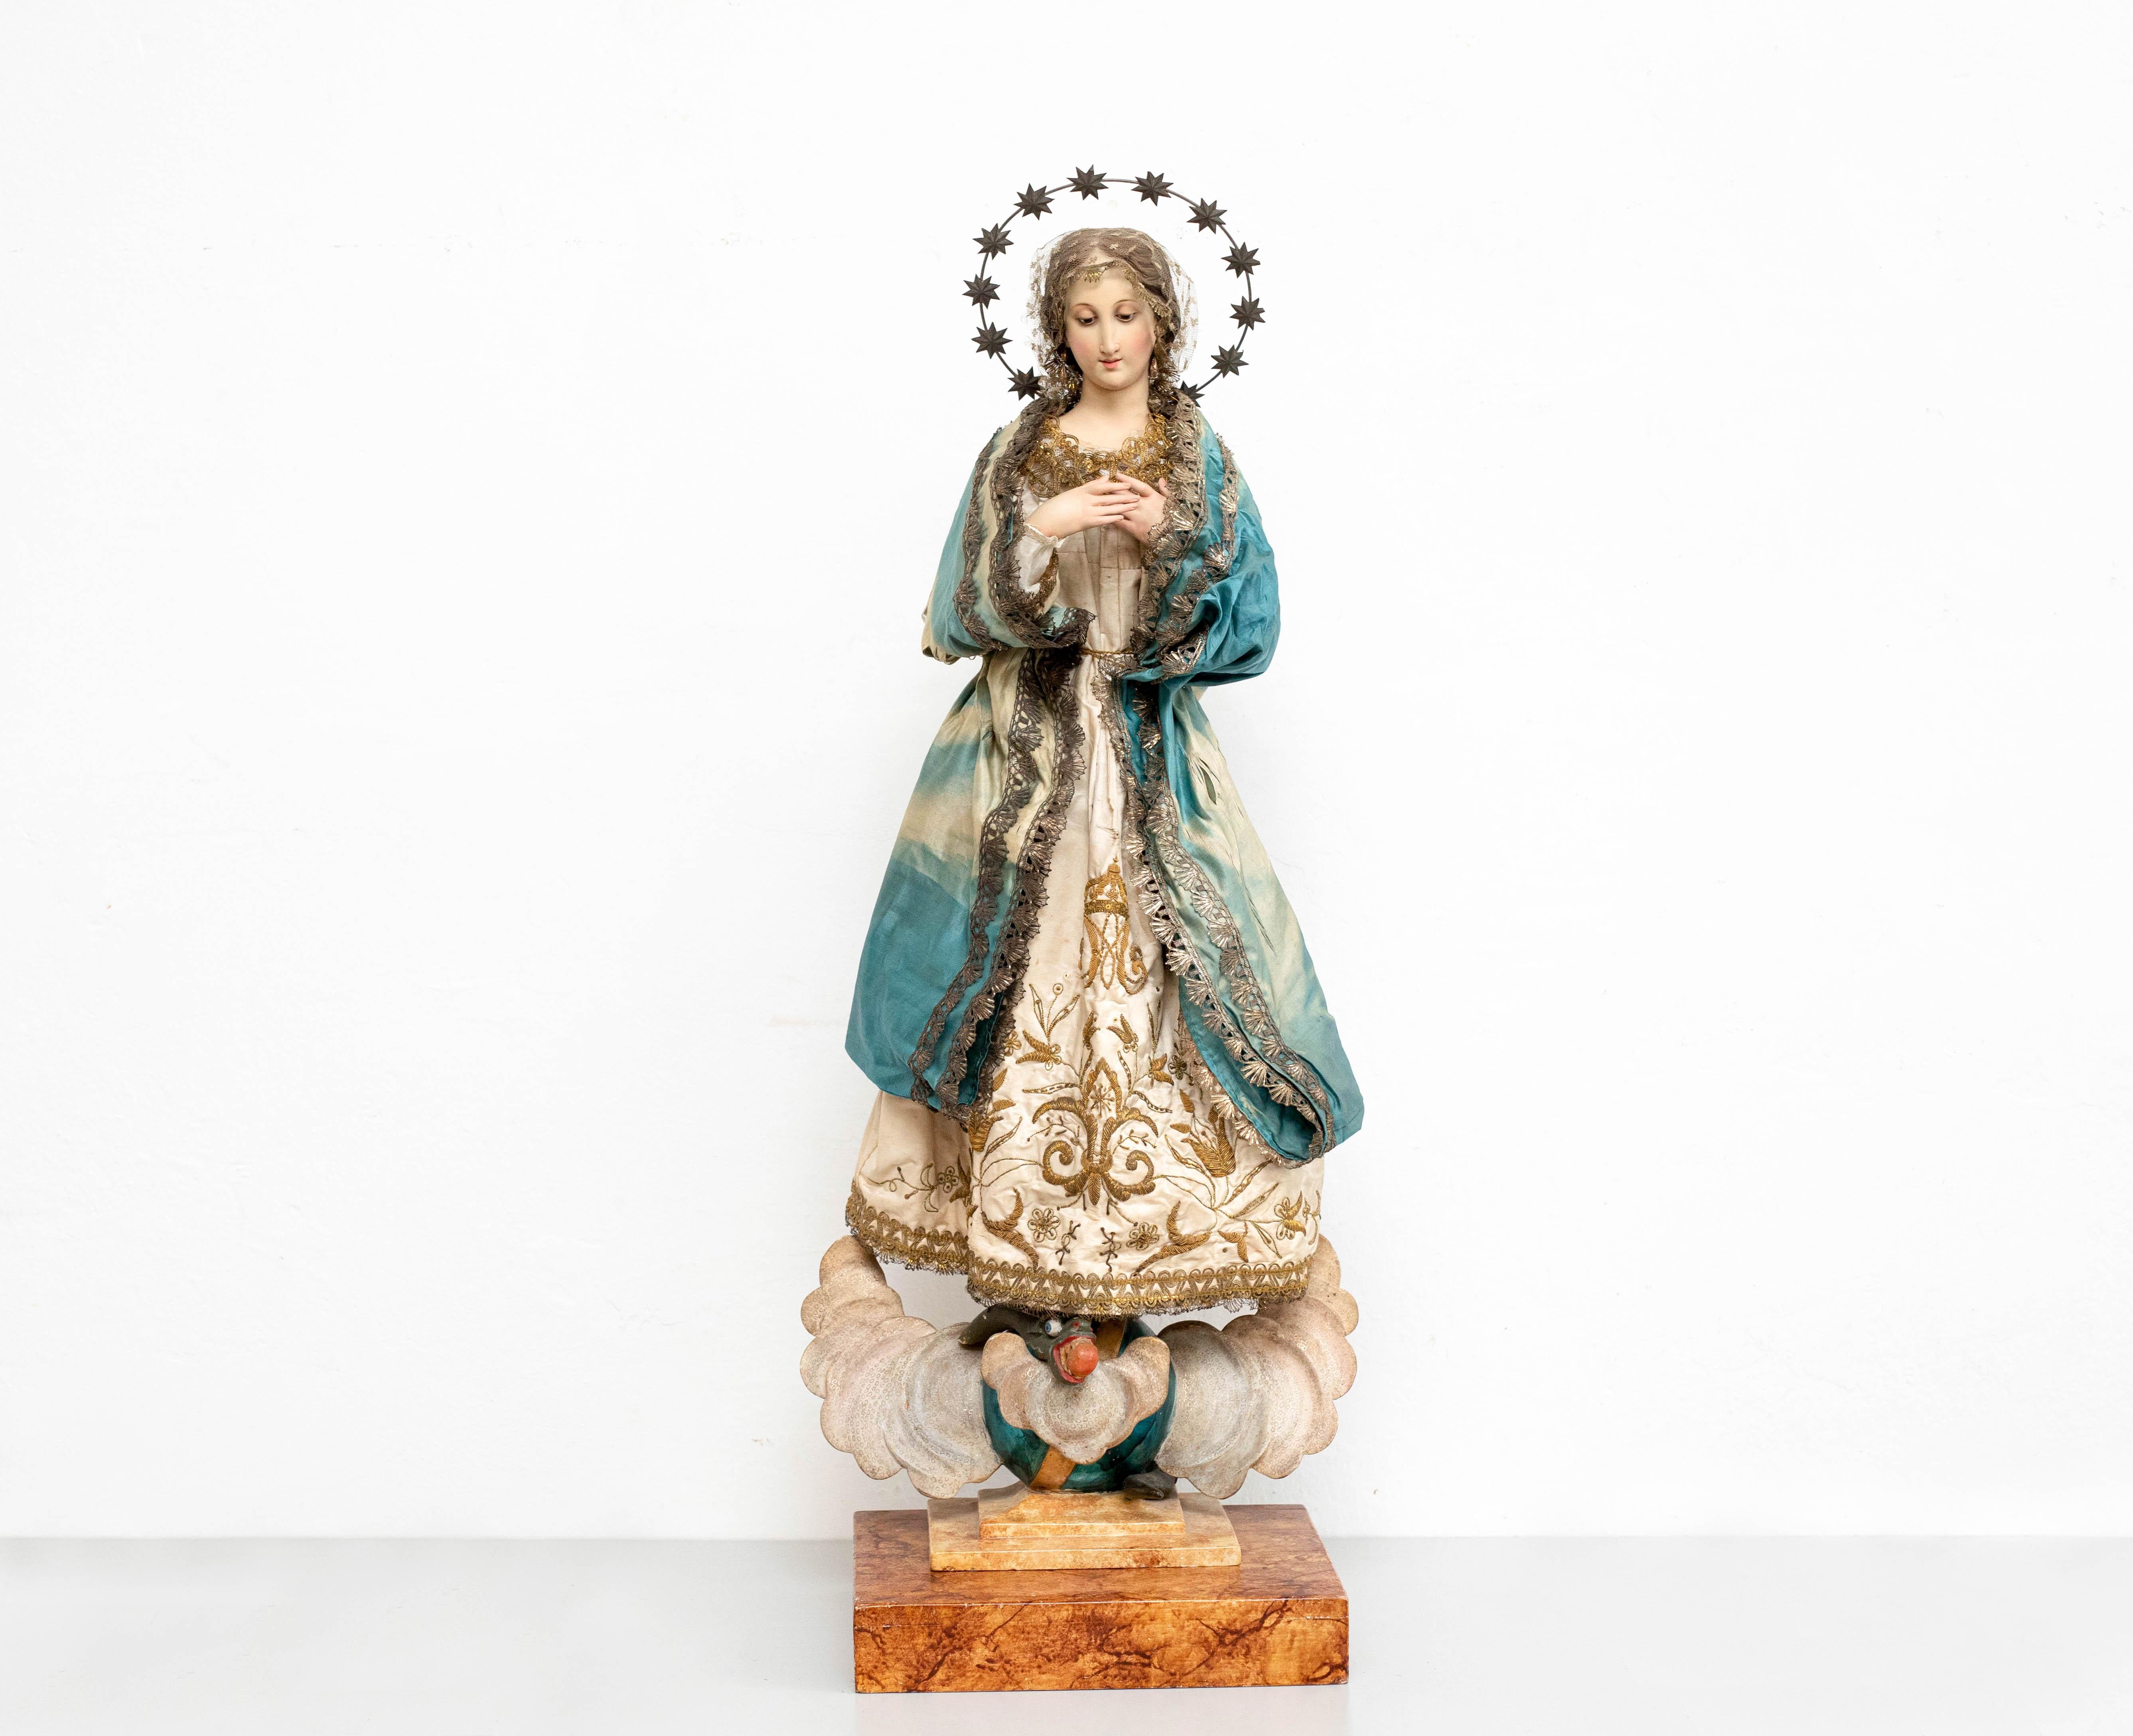 Traditionelle religiöse Holzskulptur einer Jungfrau.

Hergestellt in Katalonien, Spanien, um 1940.

Es ist ein schönes Stück religiöses Holz mit Glasaugen.

Originaler Zustand mit geringen alters- und gebrauchsbedingten